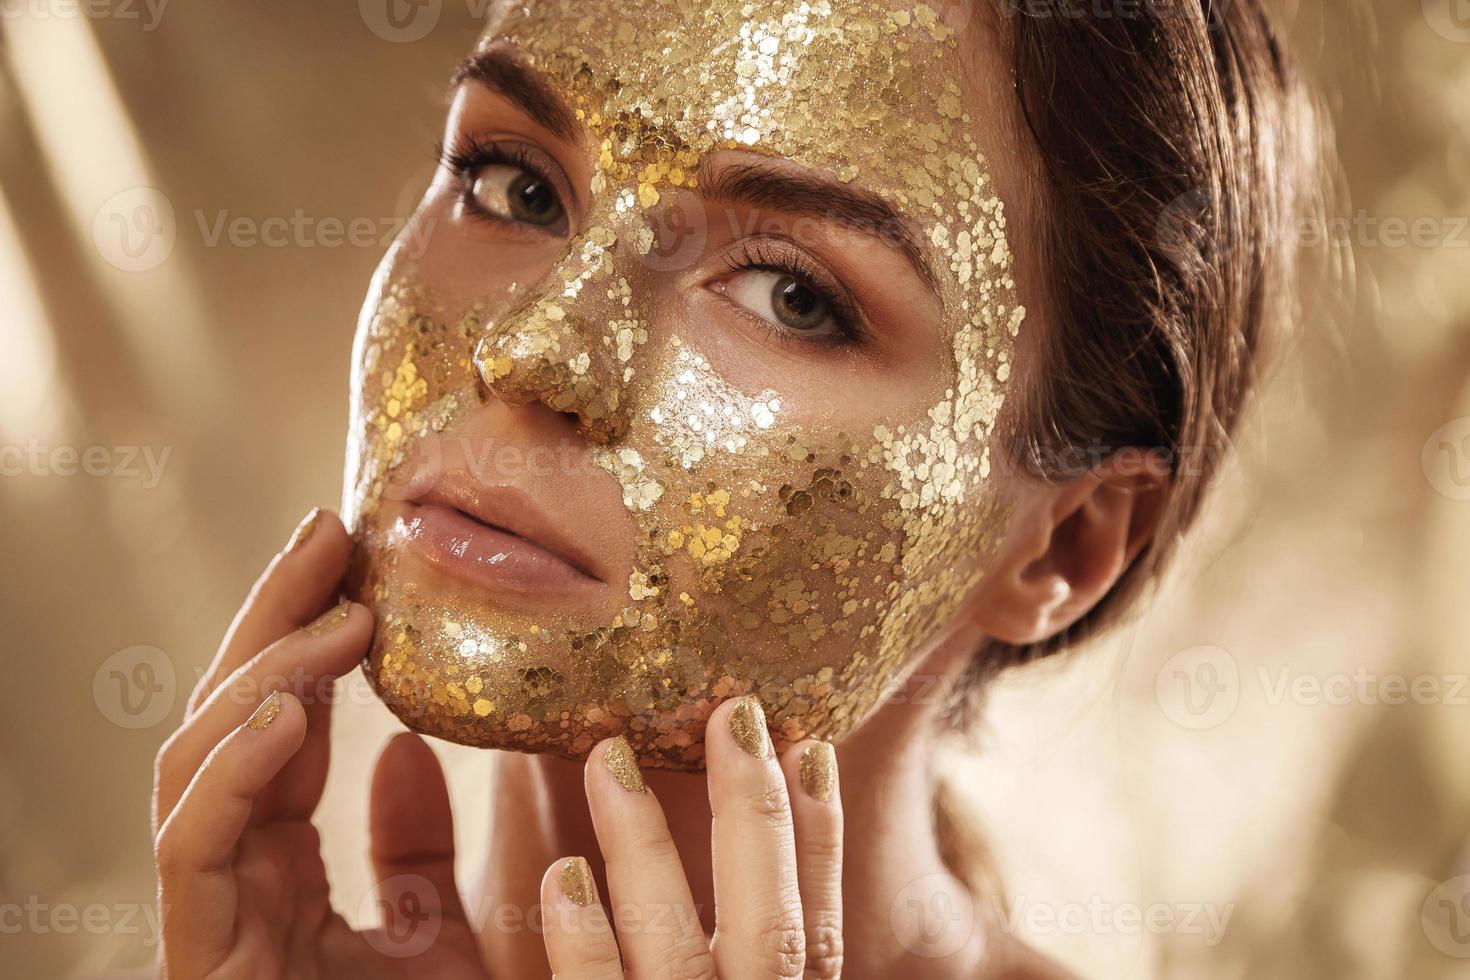 schöne frau mit goldglänzender maske auf ihrem gesicht zur hautbehandlung foto